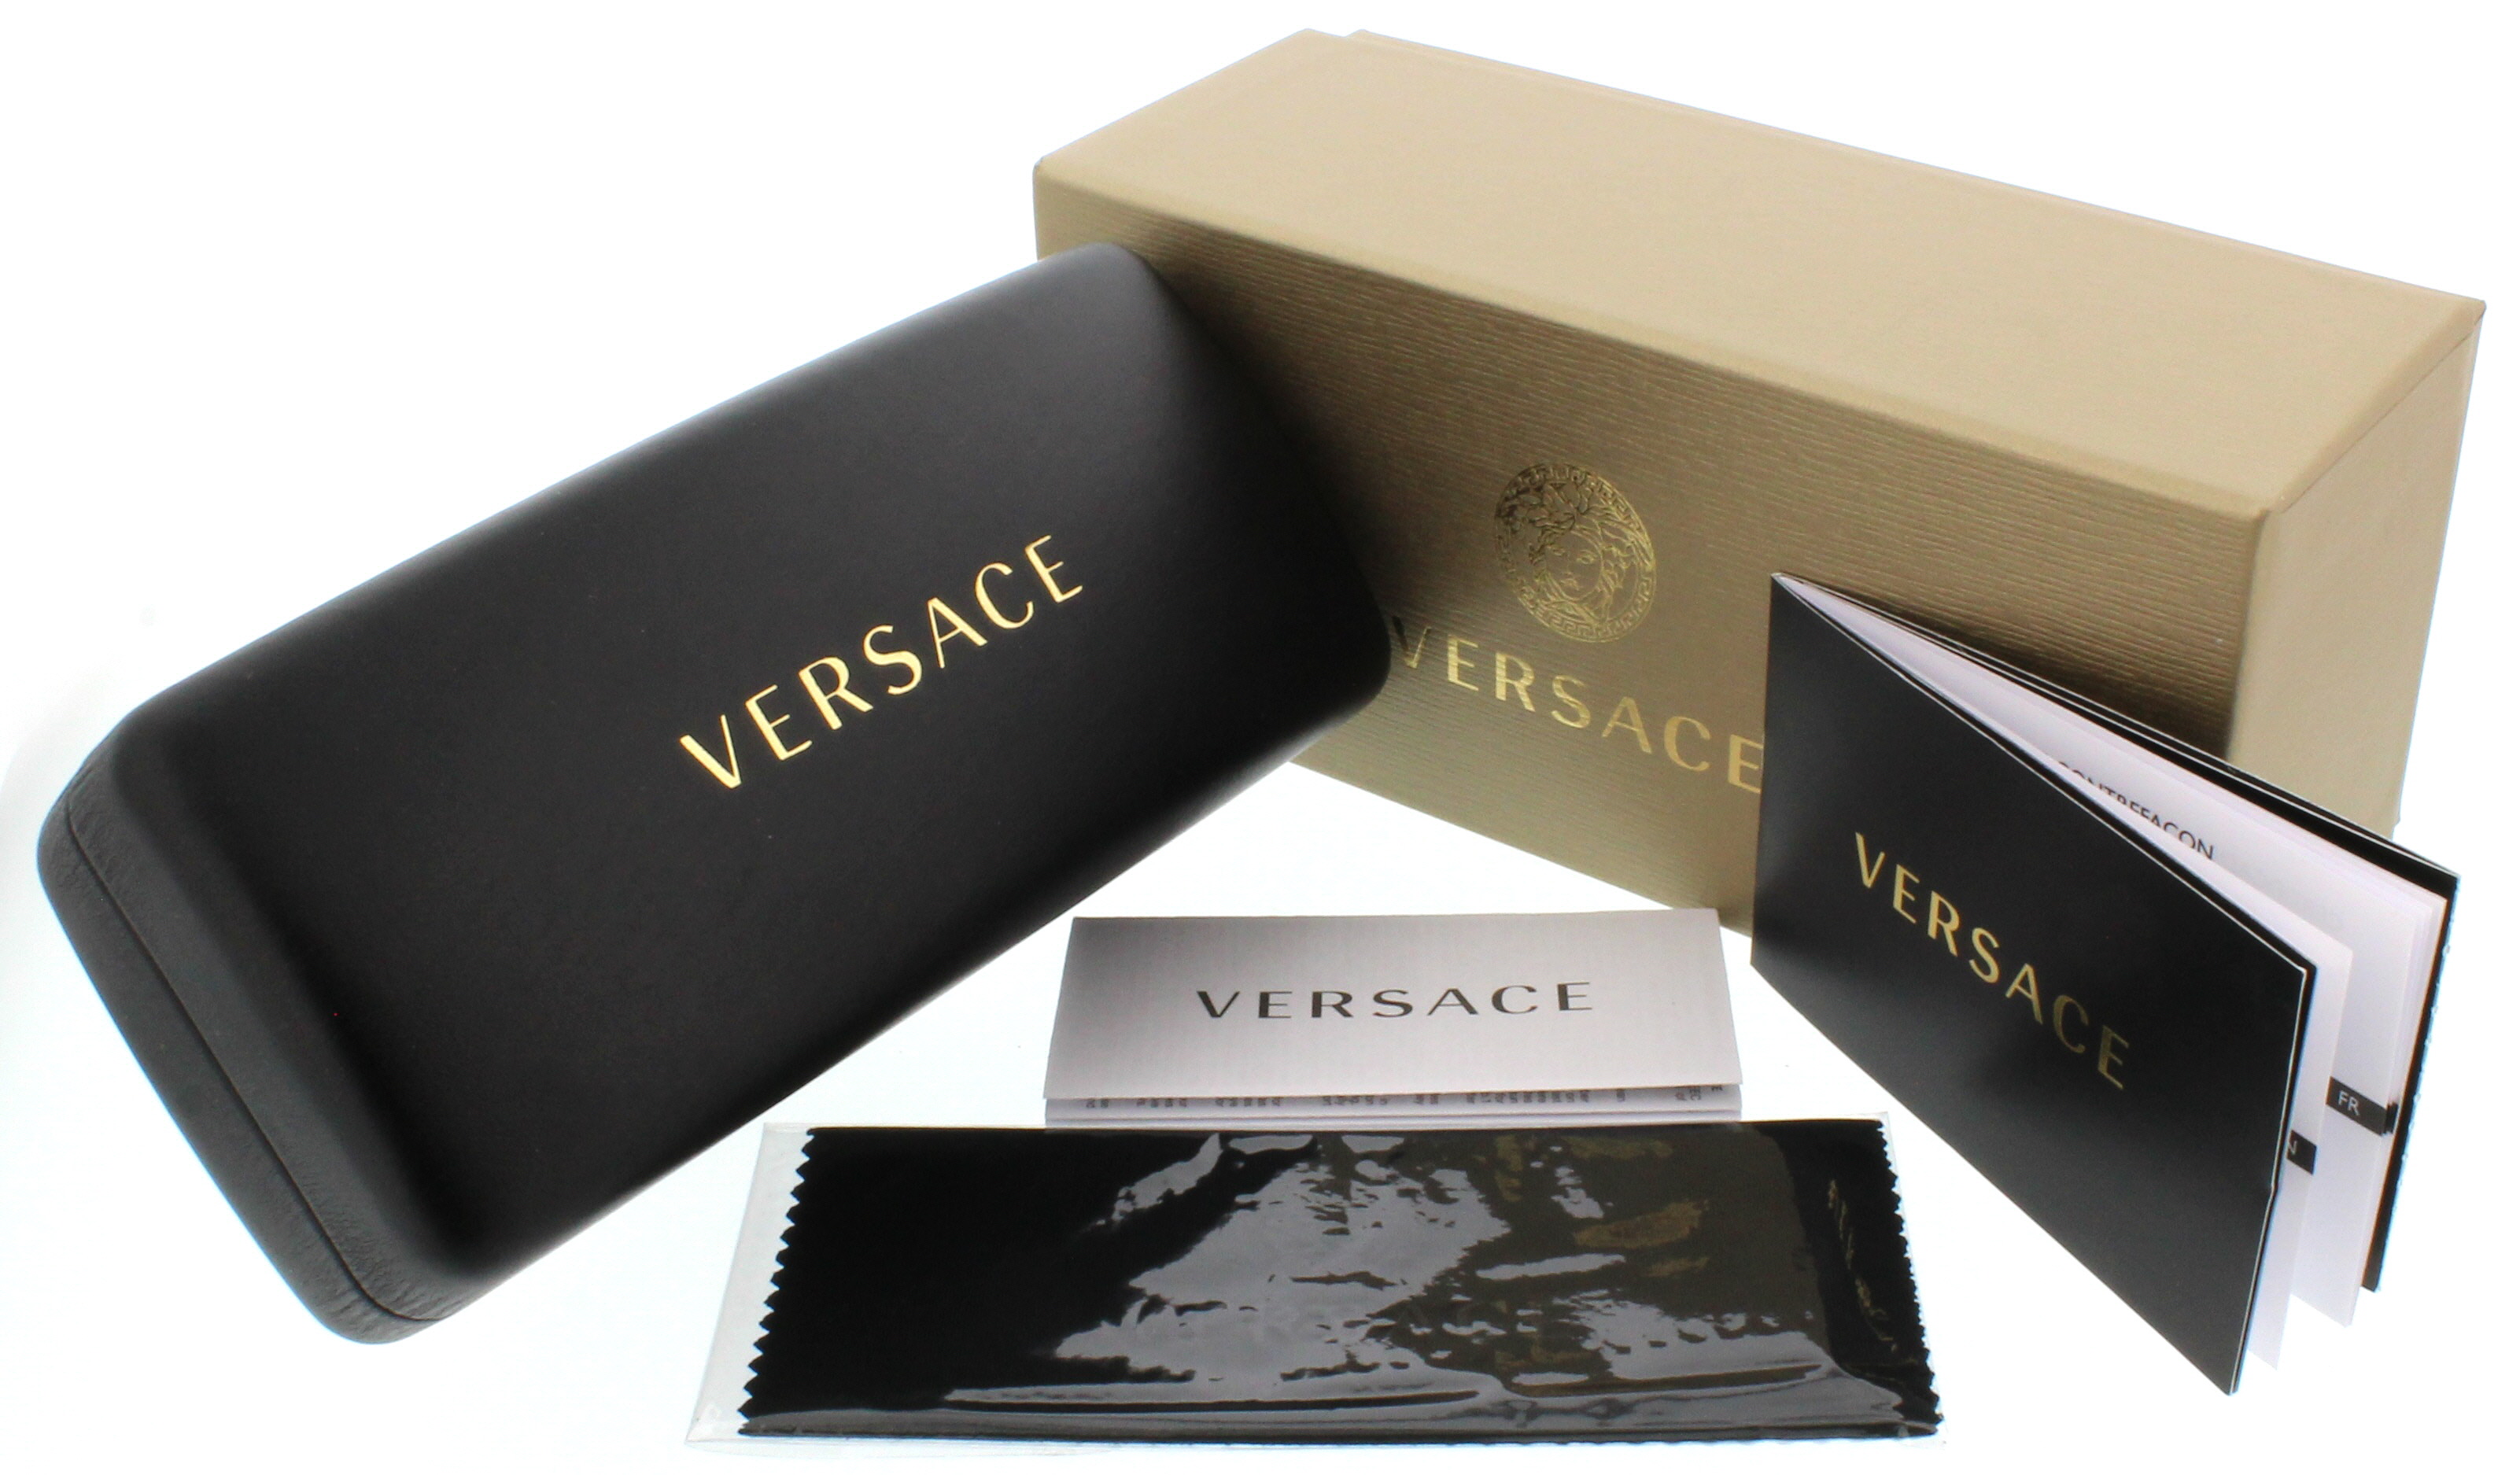 Designer Frames Outlet. Versace Sunglasses VE4296